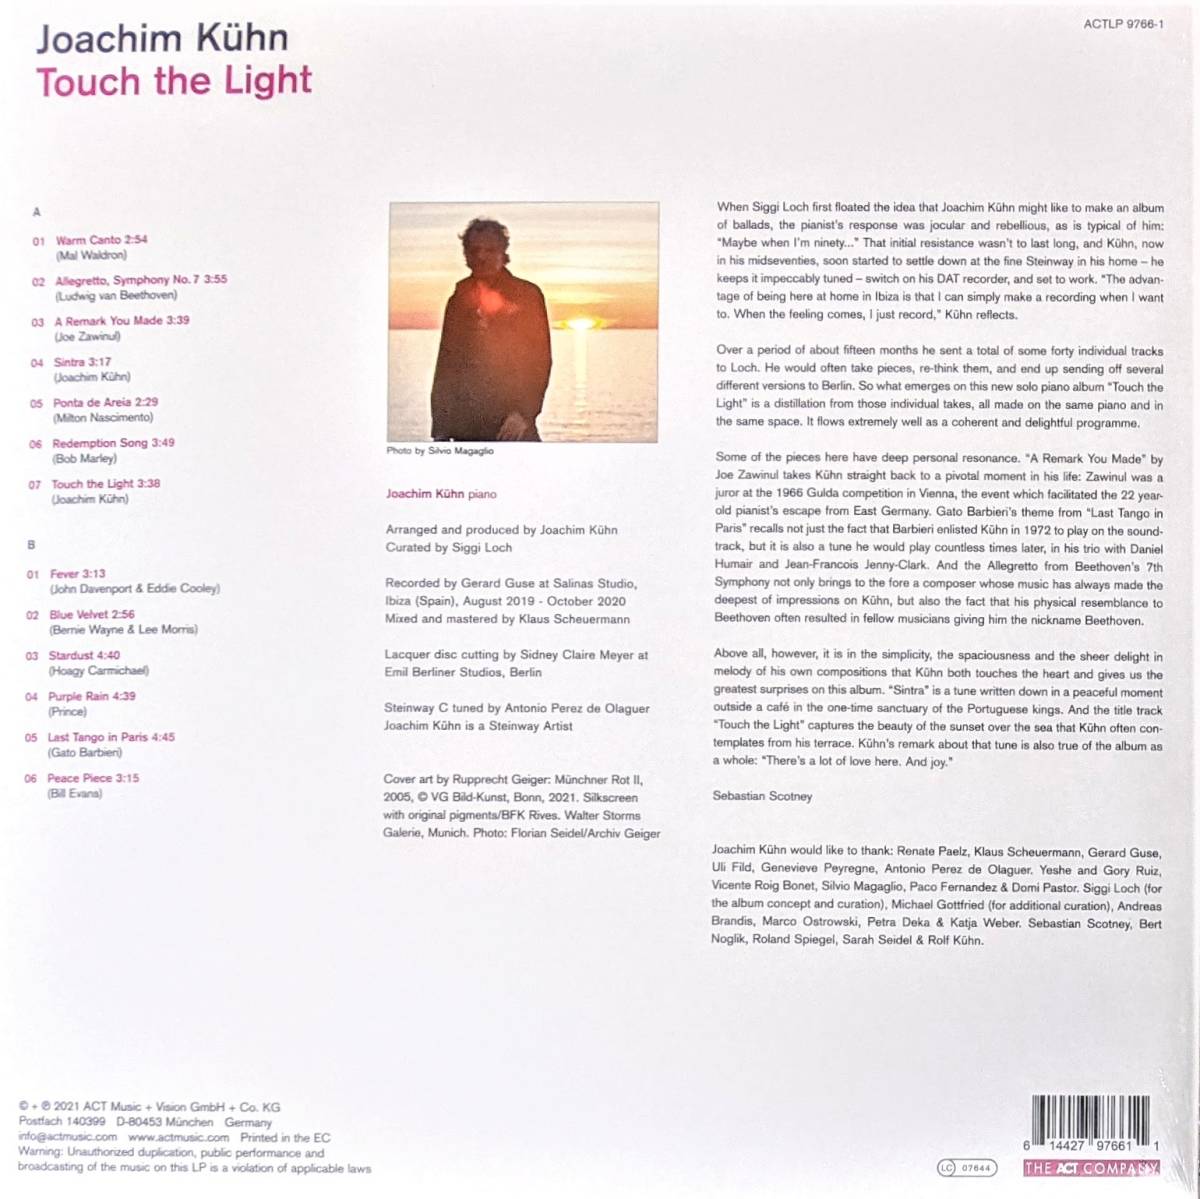 Joachim Kuhn ヨアヒム・キューン - Touch The Light 限定アナログ・レコード